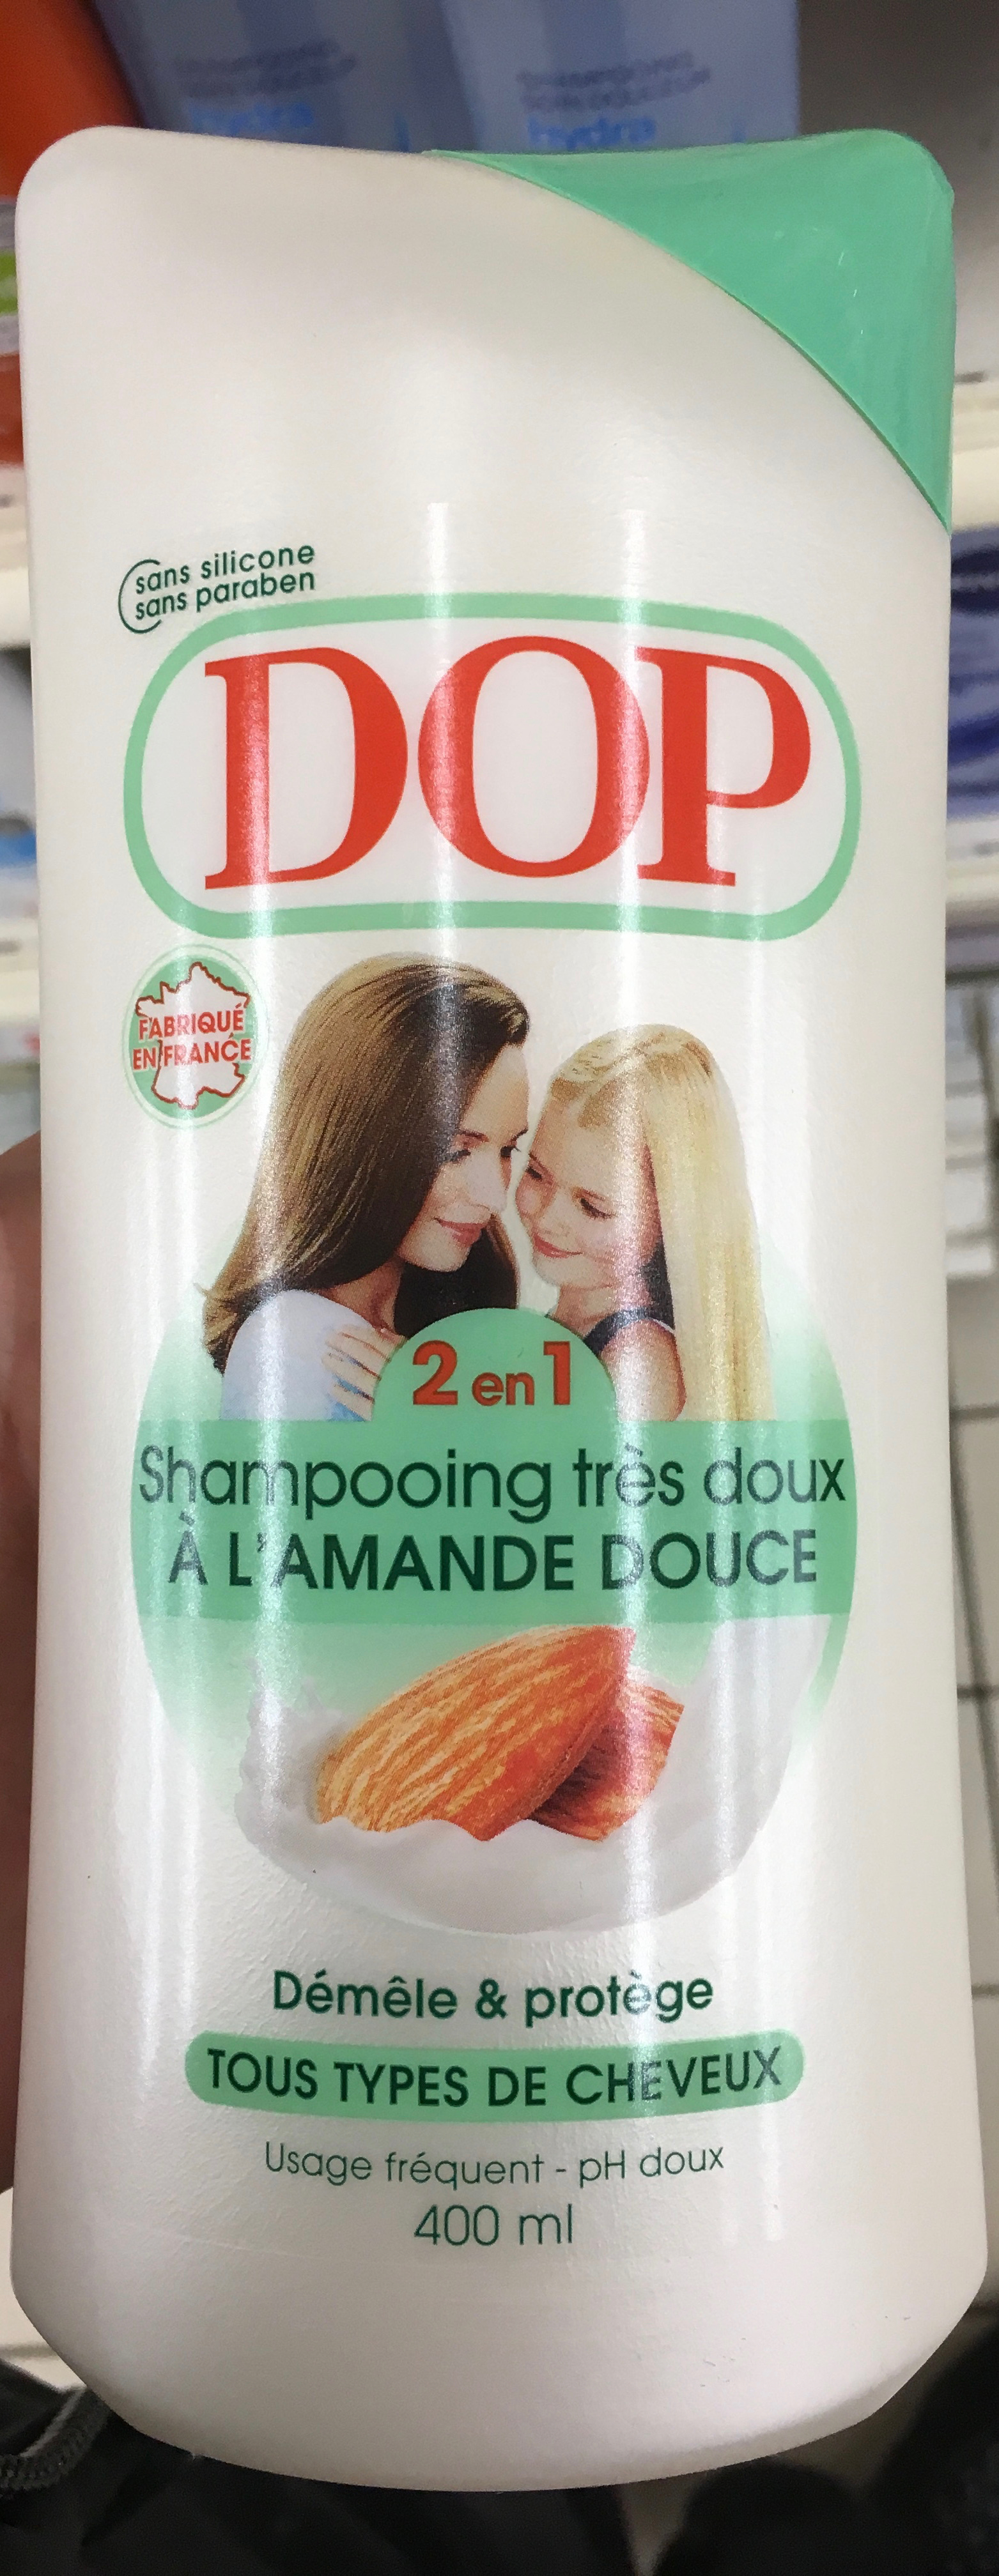 Shampooing très doux 2 en 1 à l'amande douce - Produkto - fr